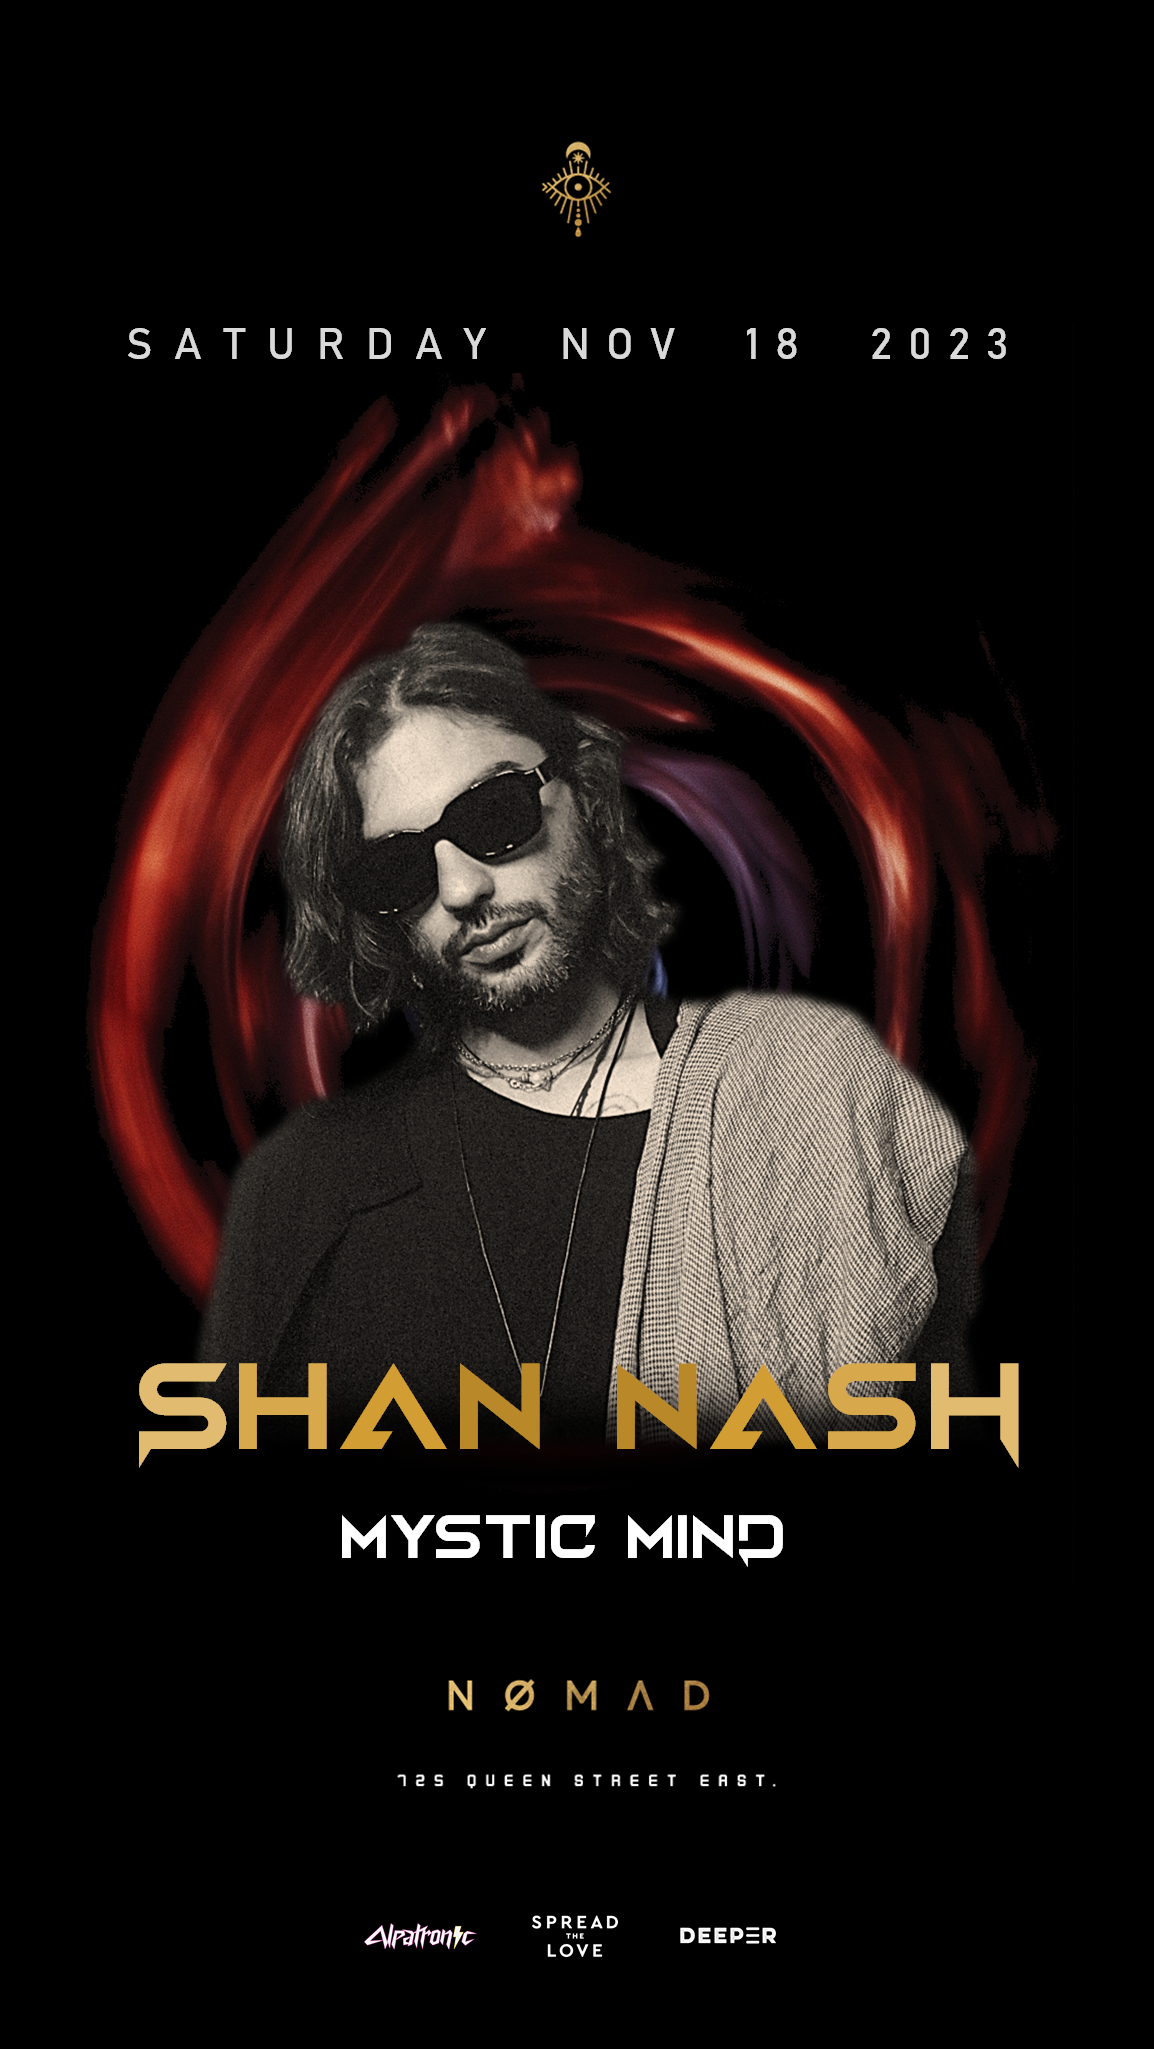 Shan Nash at Nomad - フライヤー表